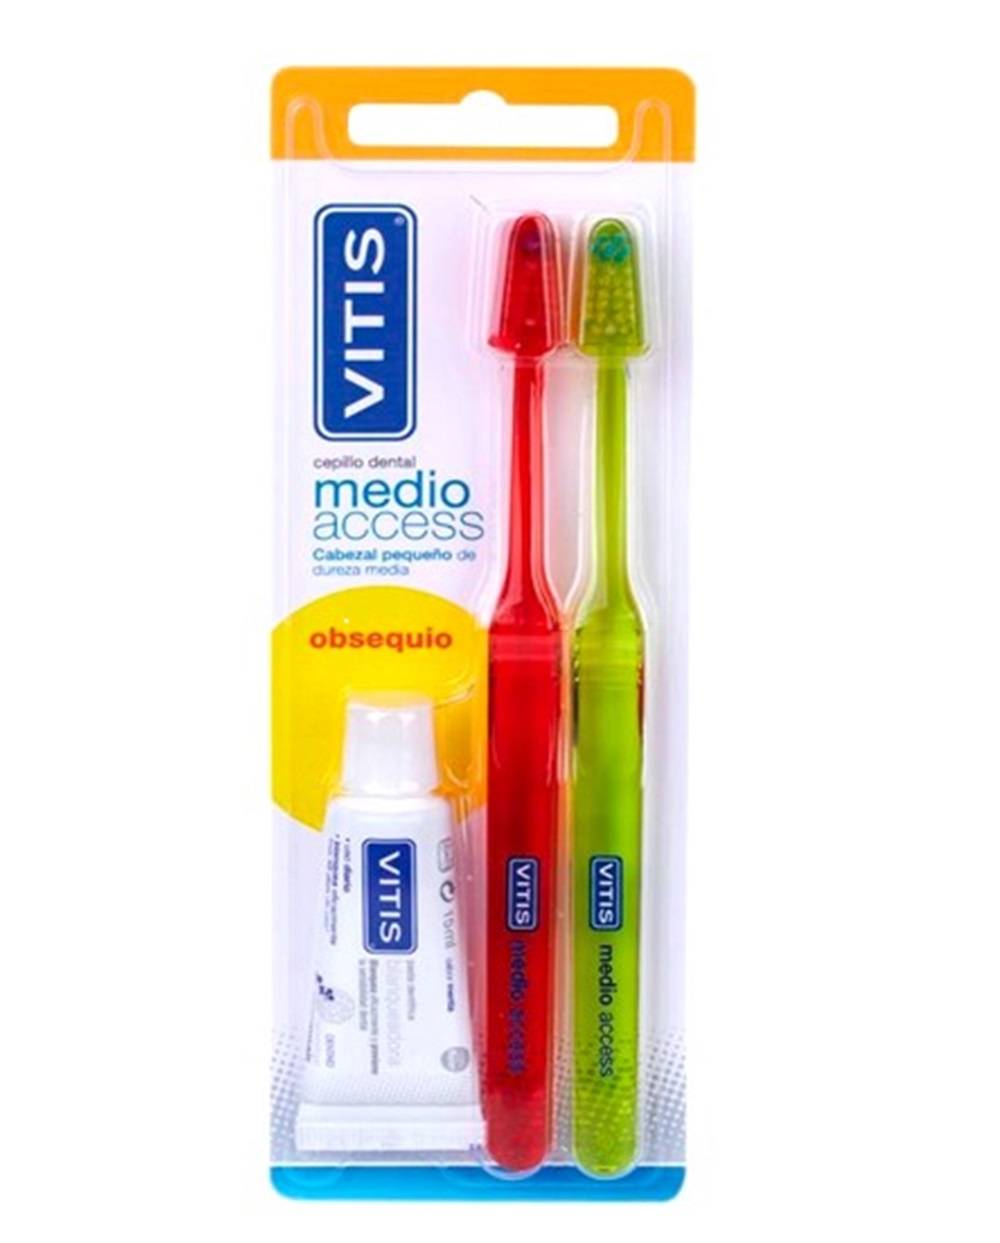 Duplo cepillo dental vitis Access Medio